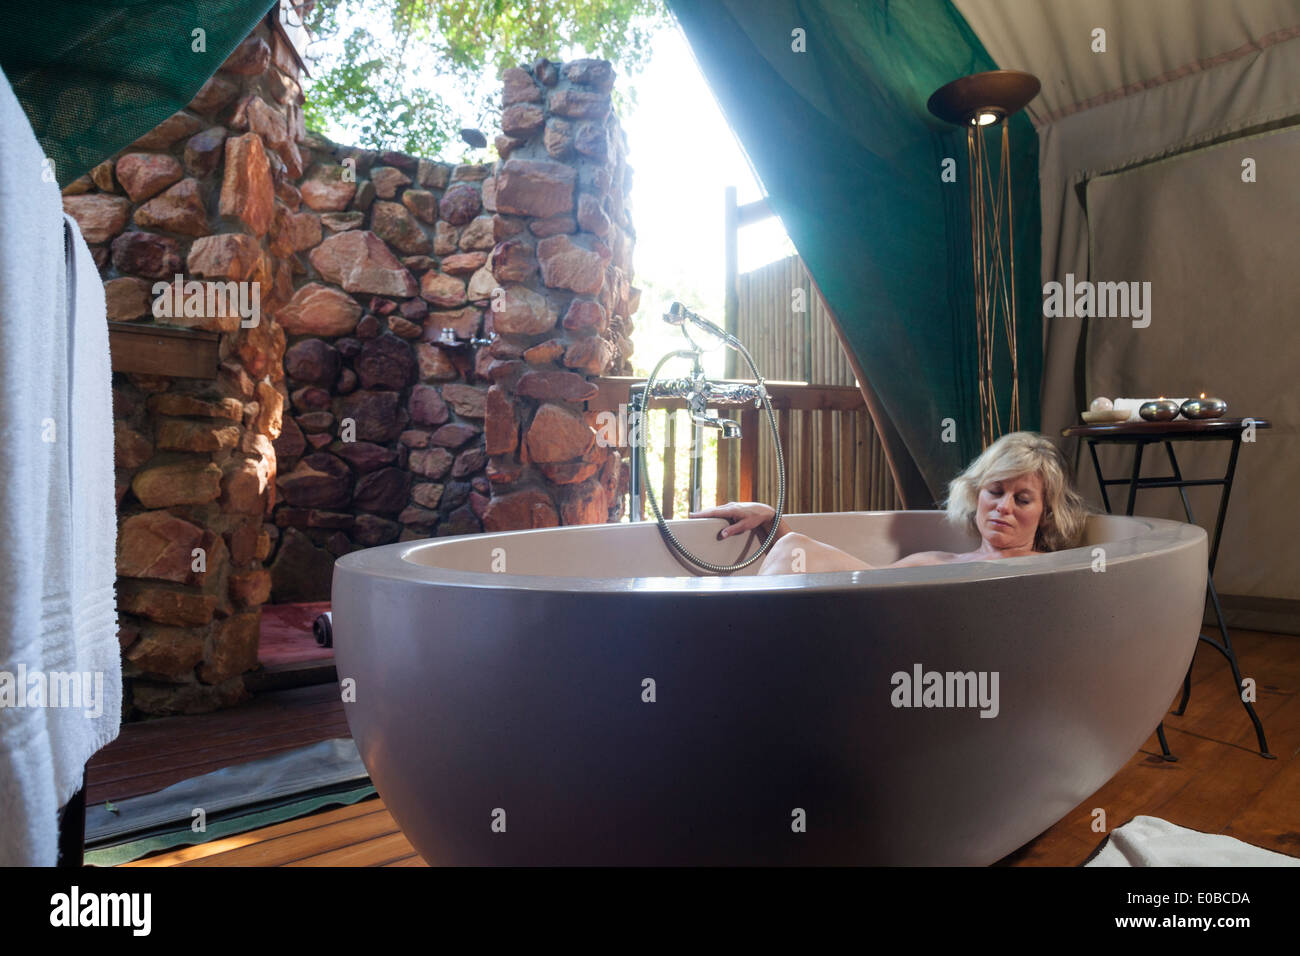 Femme blonde pan au sein d'une grande baignoire ovale dans une tente safari de luxe, Botlierskop Game Lodge, Mosselbay, Afrique du Sud Banque D'Images